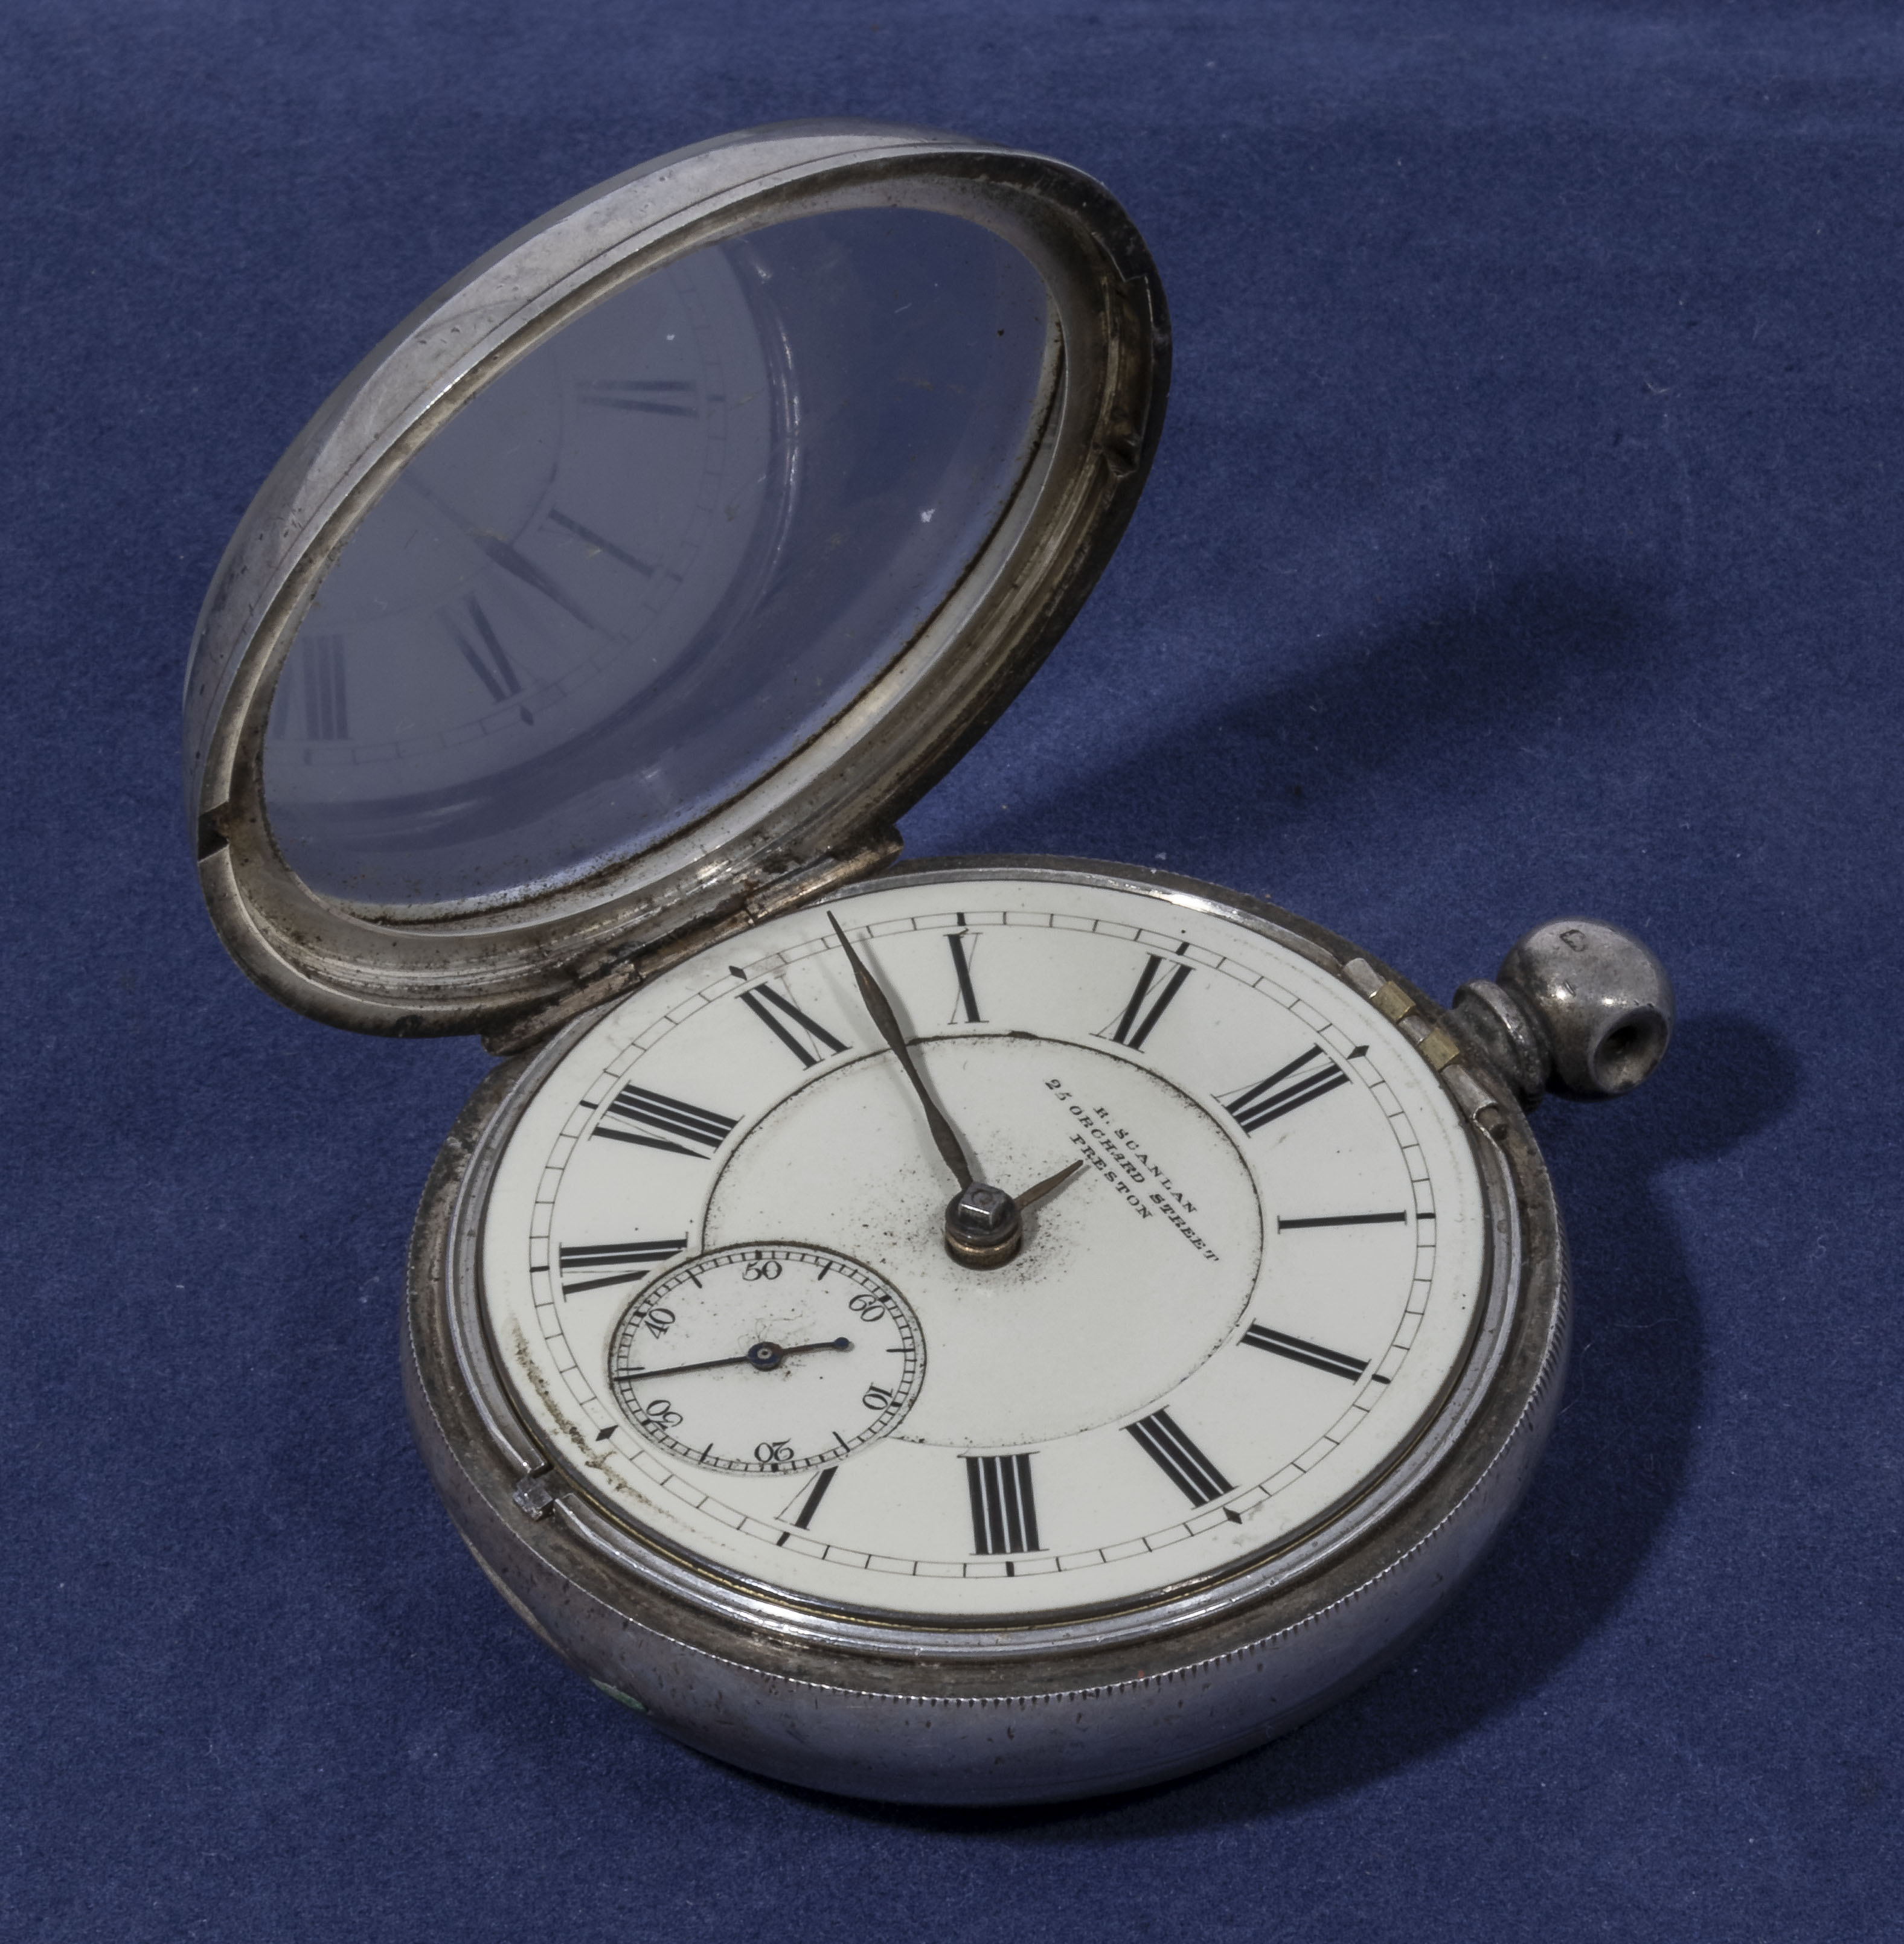 Victorian silver verge pocket watch by R. Scanlan Orchard Street Preston watch no.7222 silver case